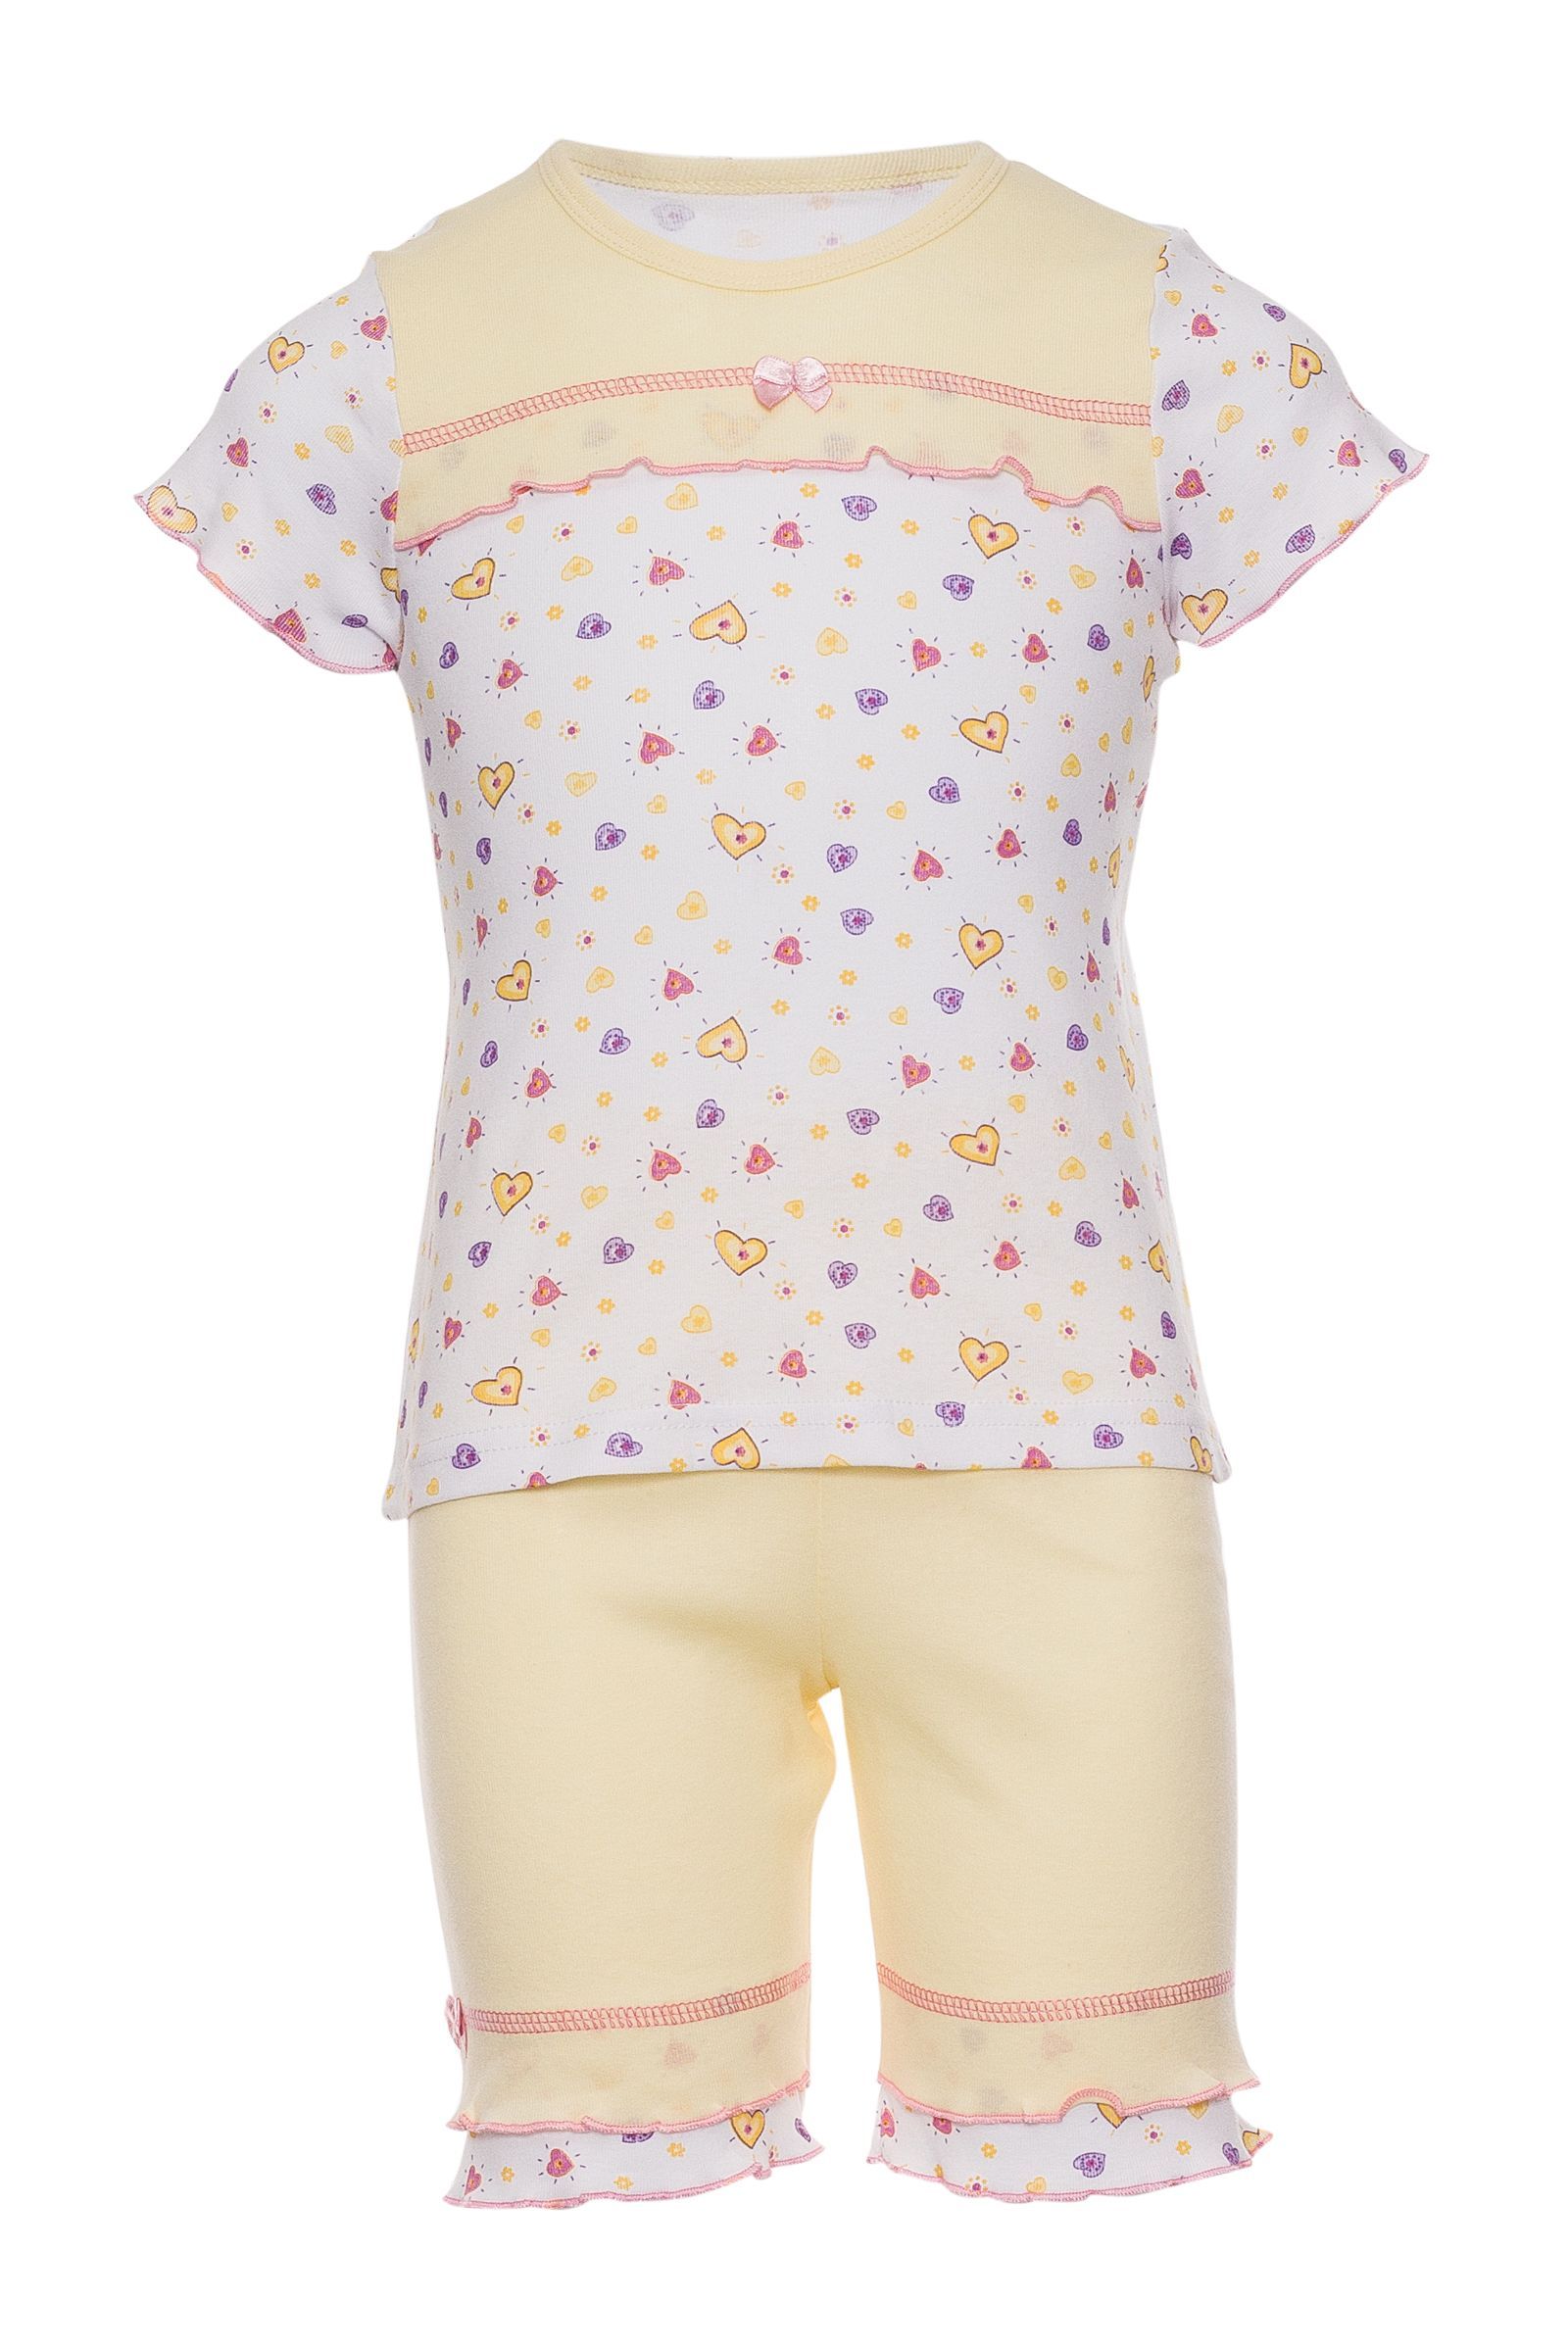 Пижама-ПЖ03-707 оптом от производителя детской одежды 'Алёна'